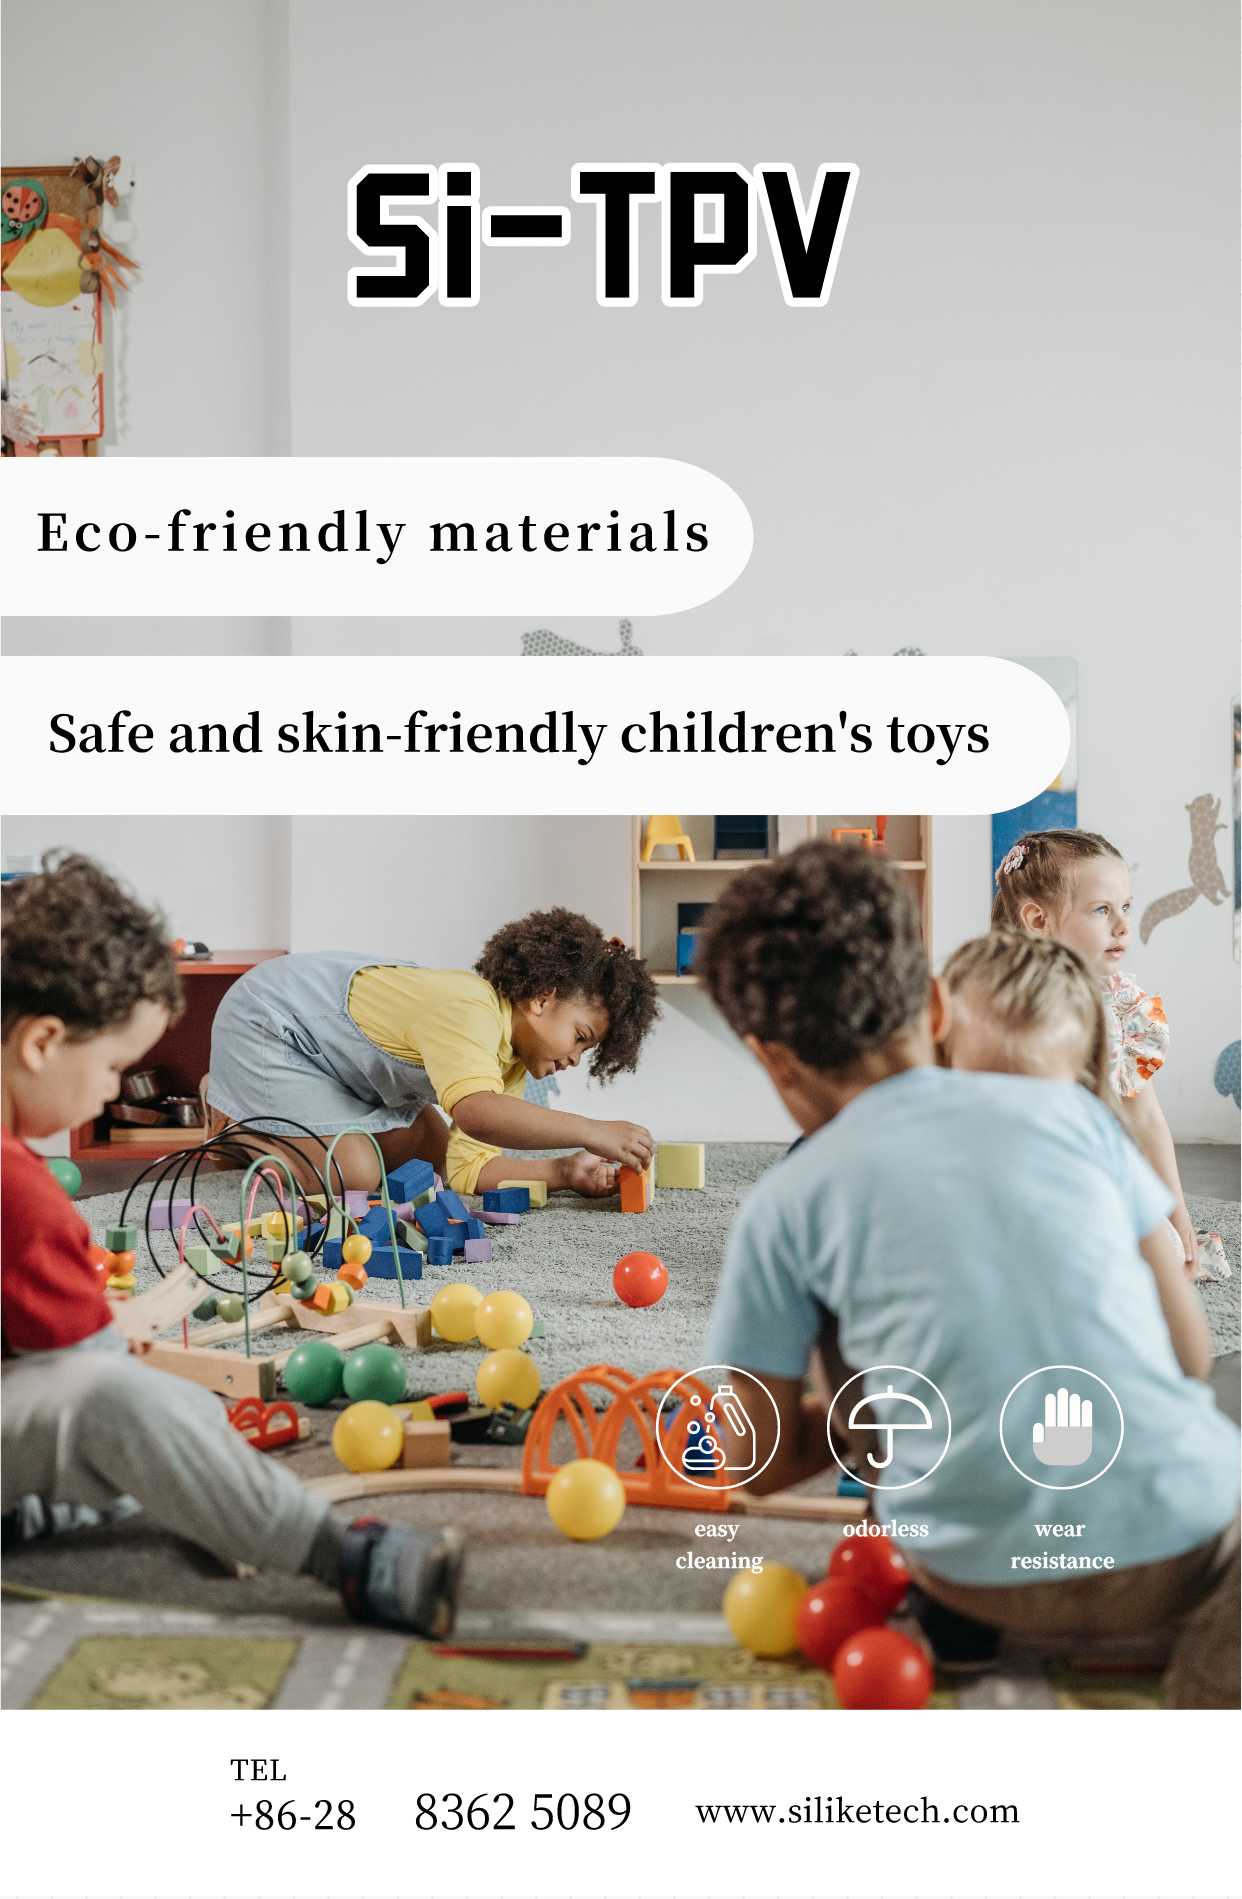 Grânulos de TPU macio modificados Si-TPV, material ecológico ideal para produtos de brinquedos infantis